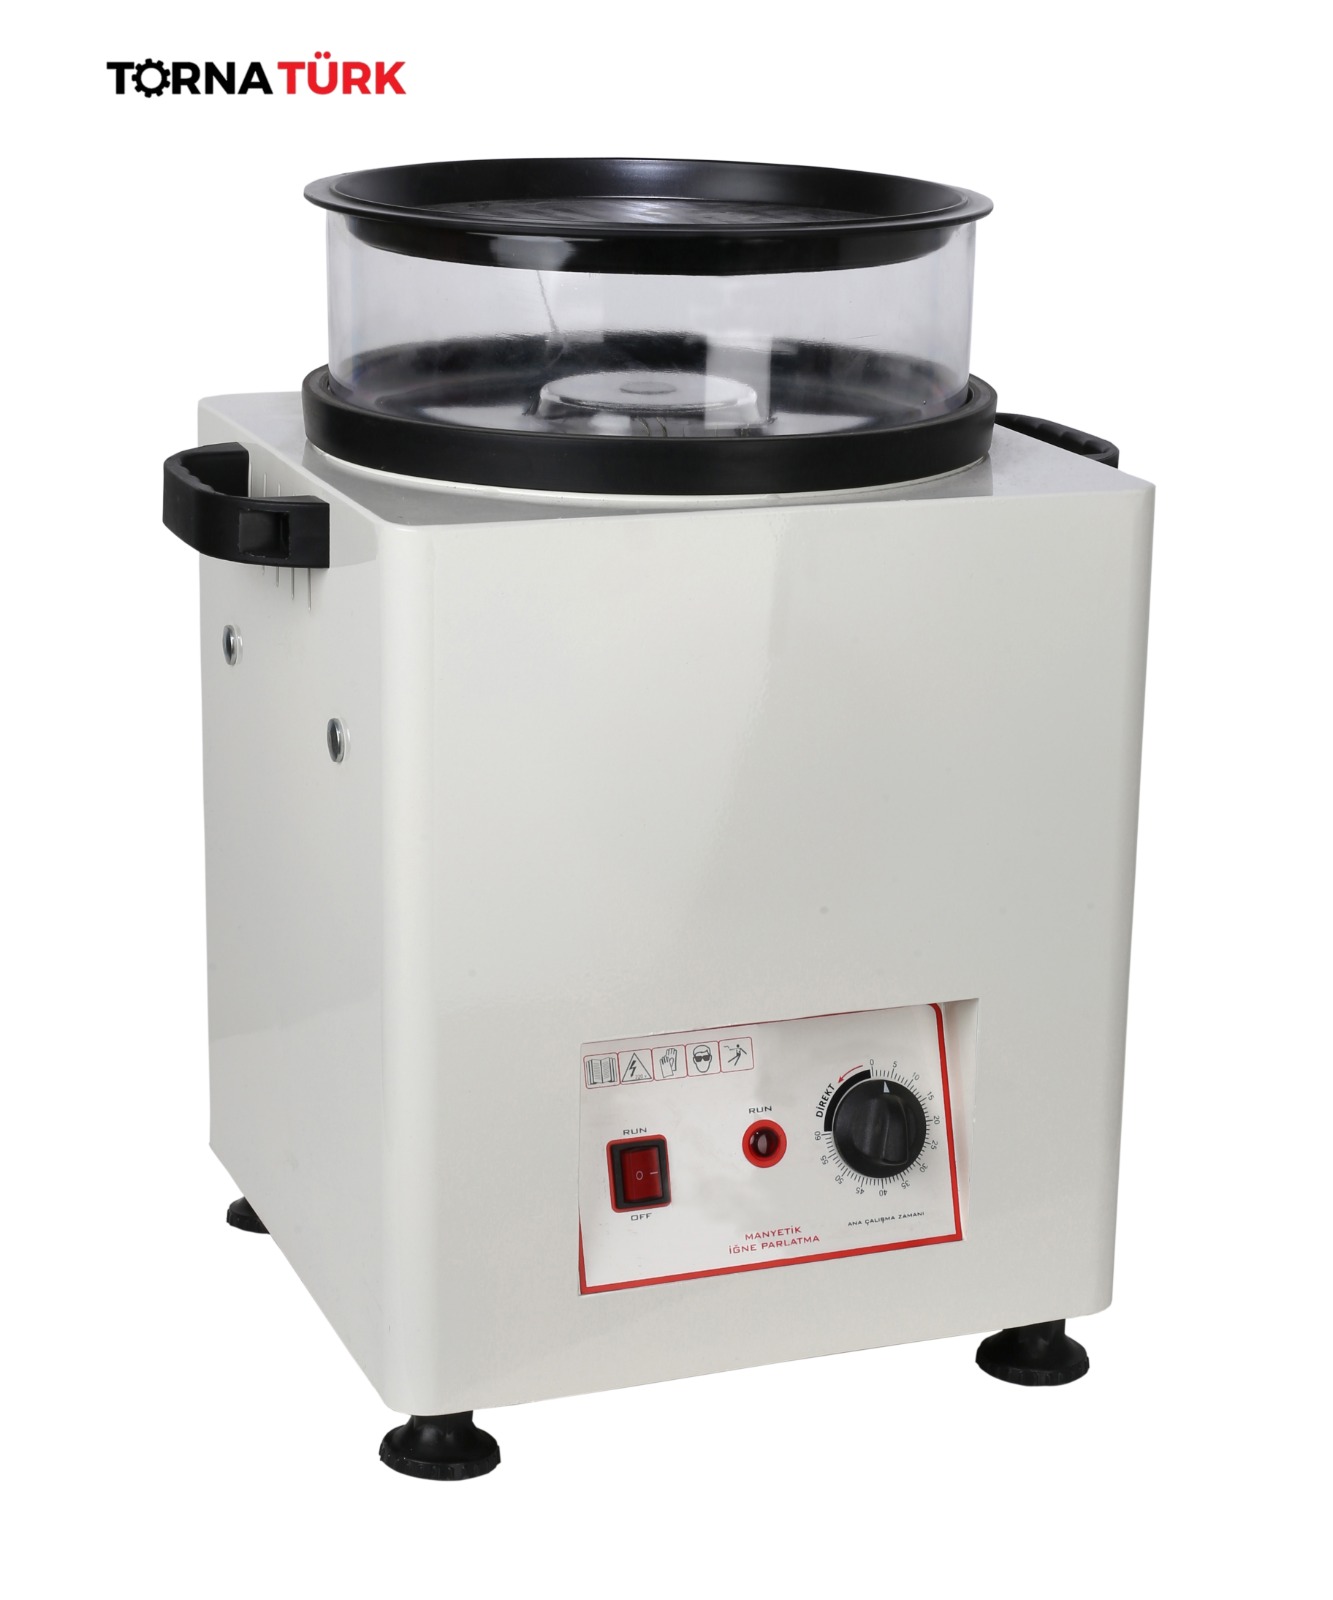 Manyetik iğne dolabı ( parlatma makinası - neodyum mıknatıslı ) 1 Kg / Magnetic needle cabinet (polishing machine) 1 Kg